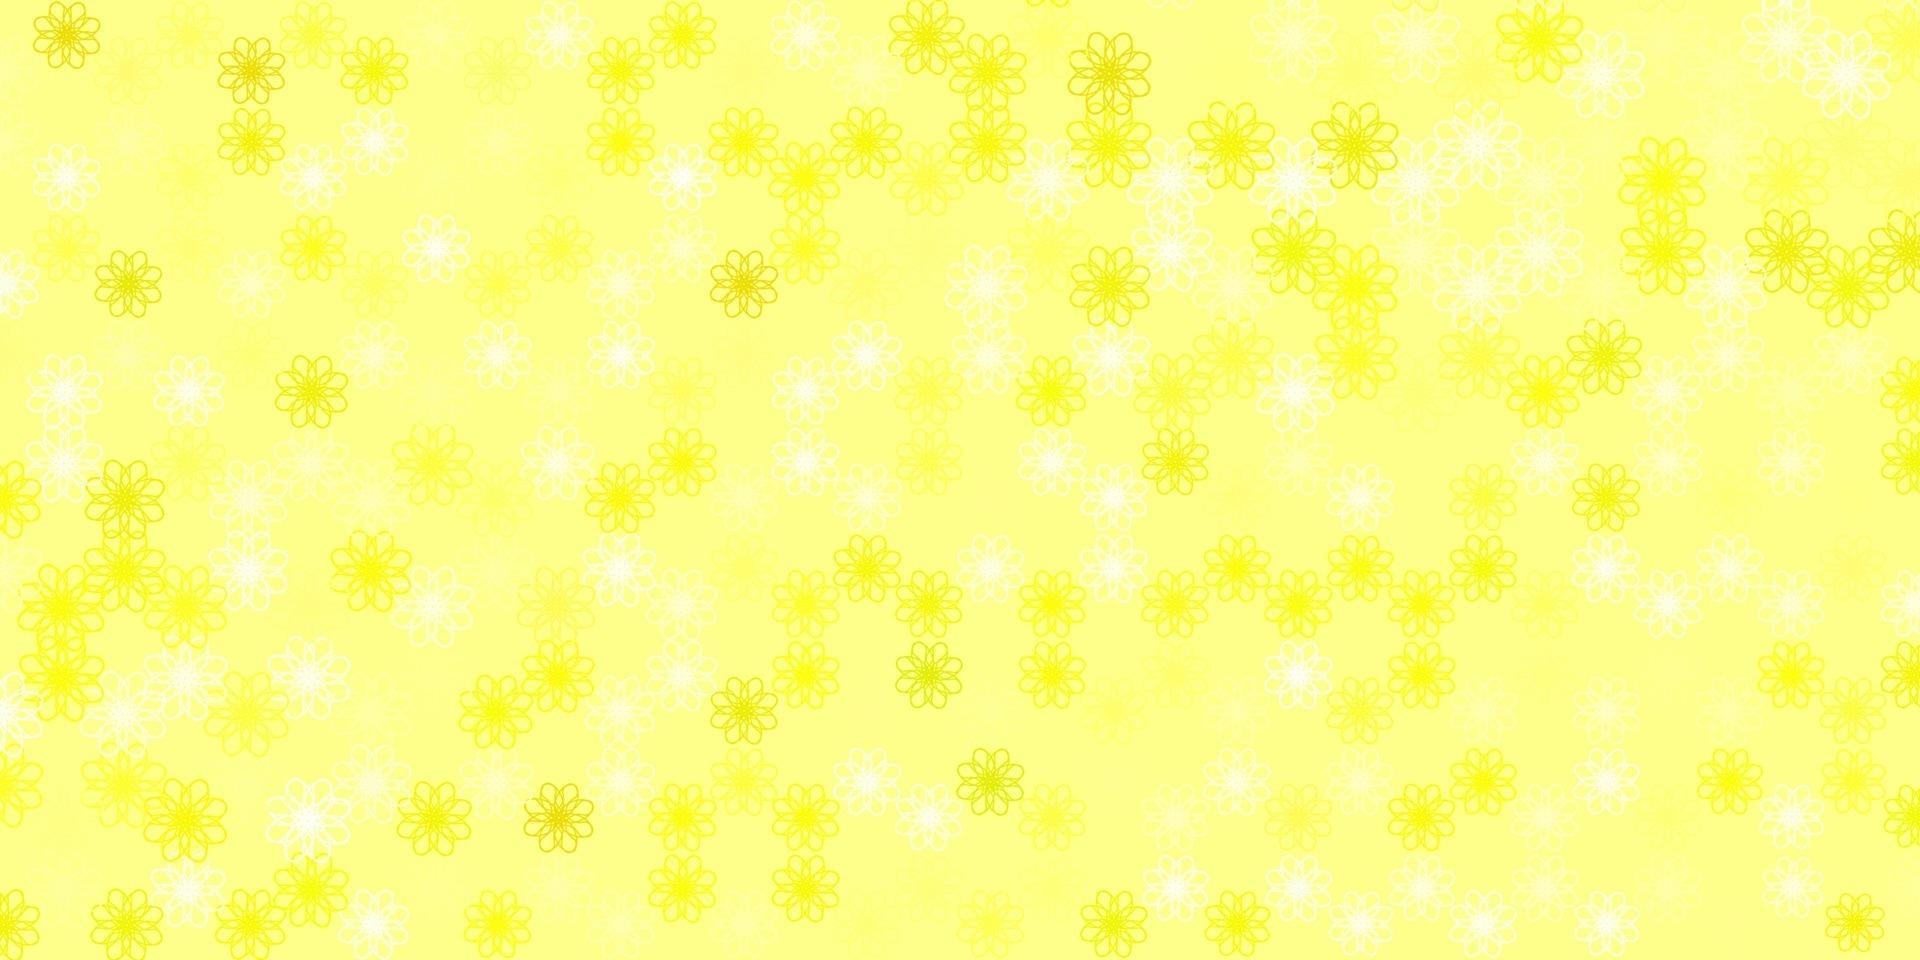 plantilla de vector amarillo claro con líneas curvas.